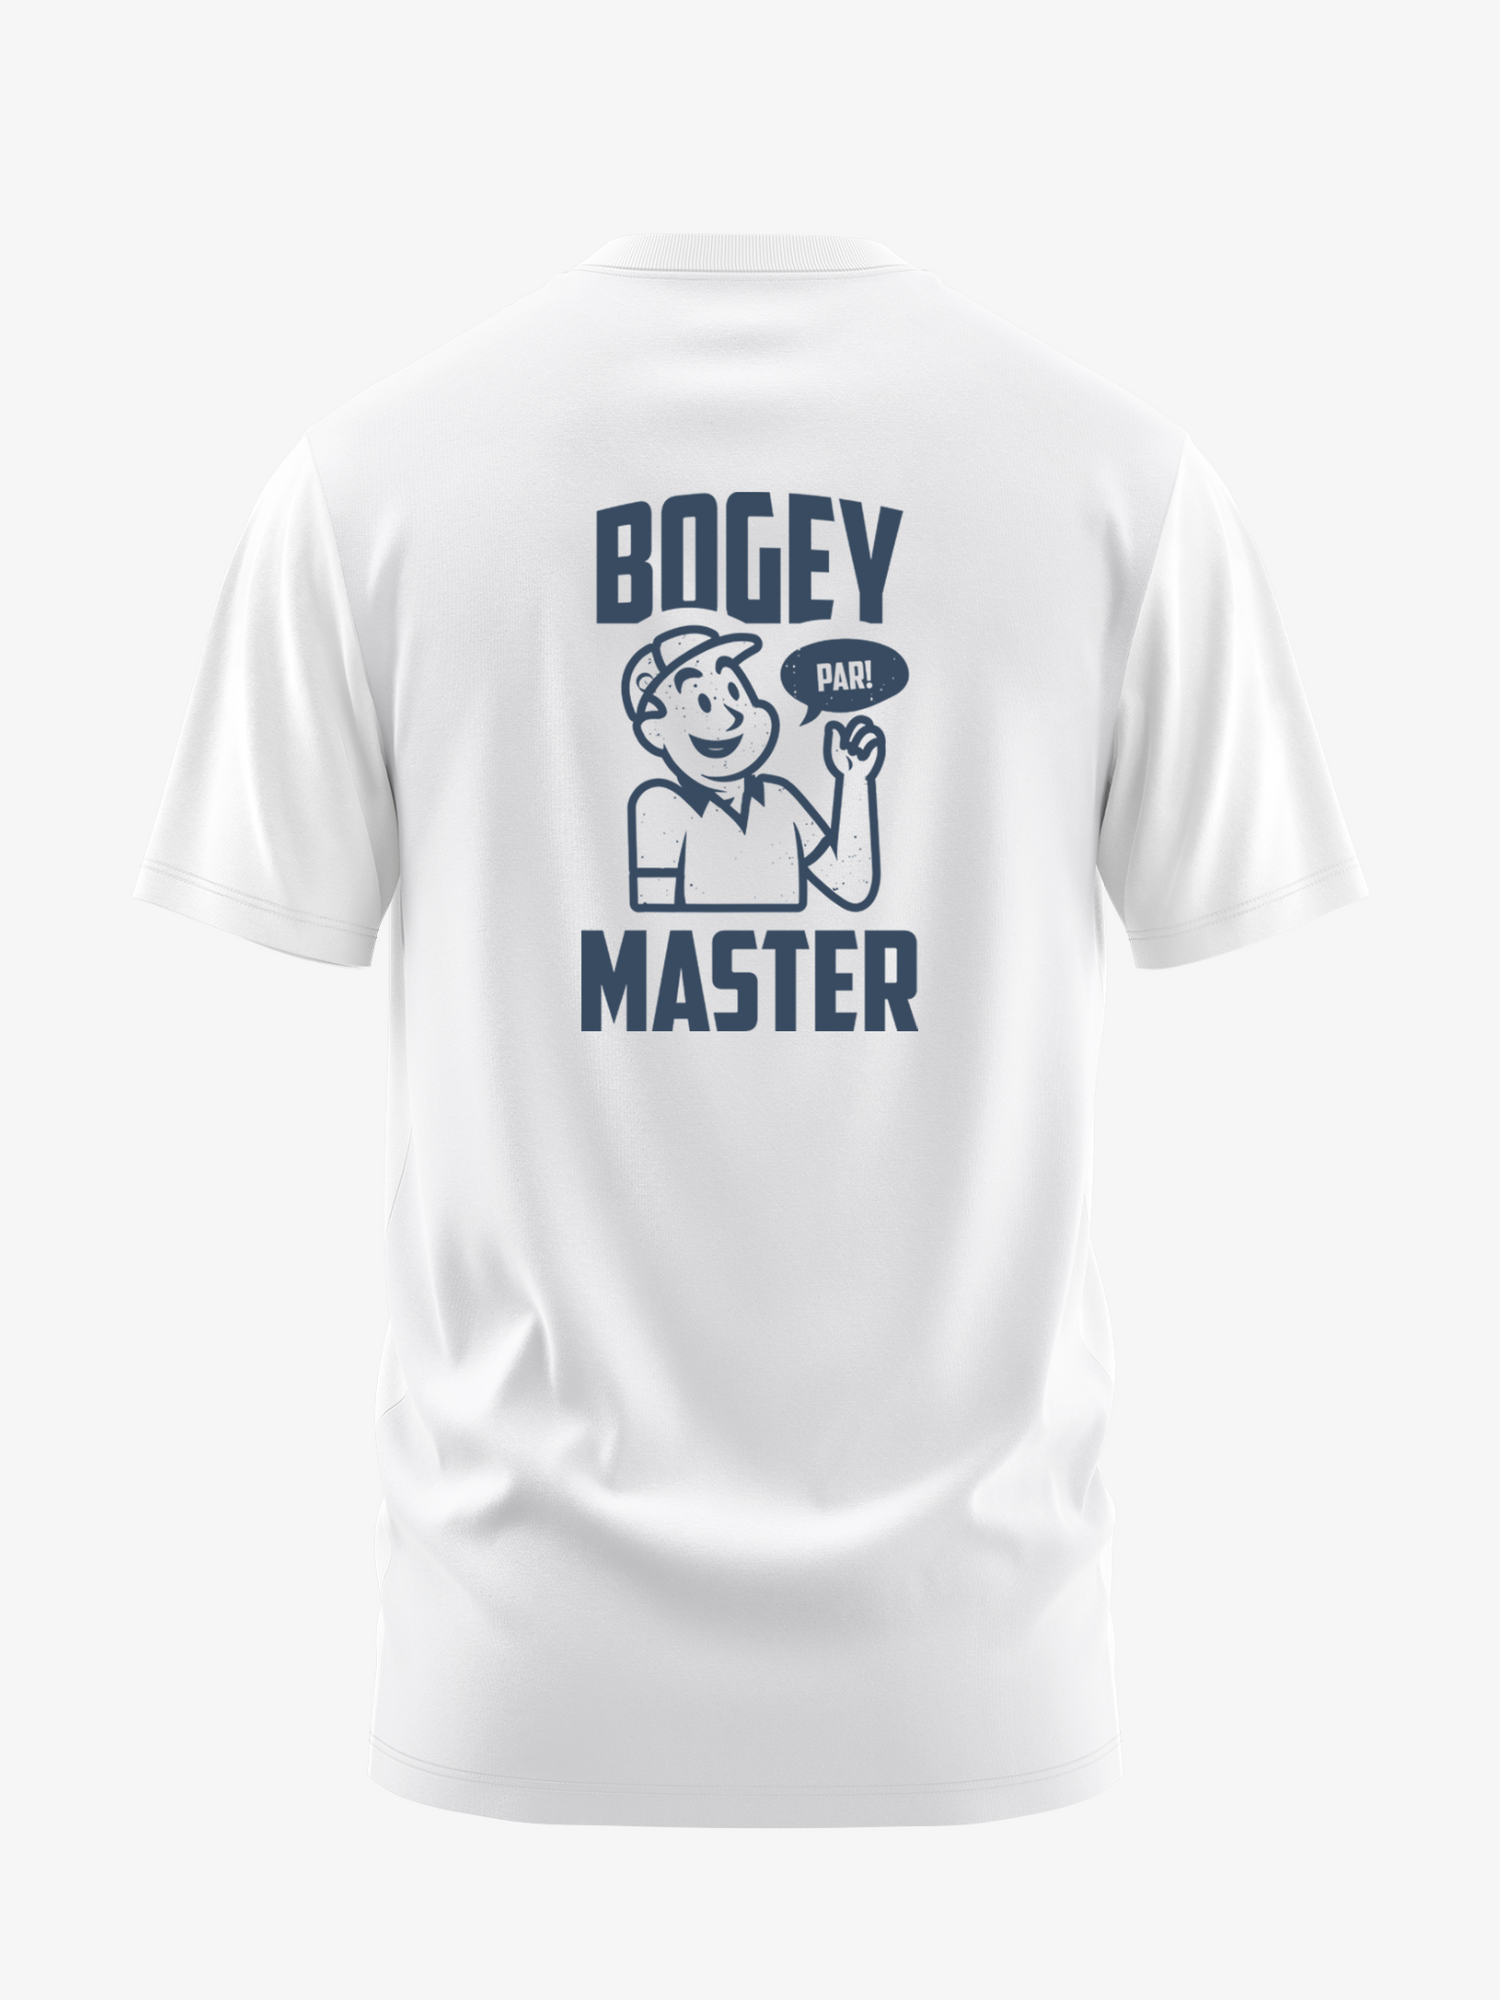 Camiseta Bogey Master